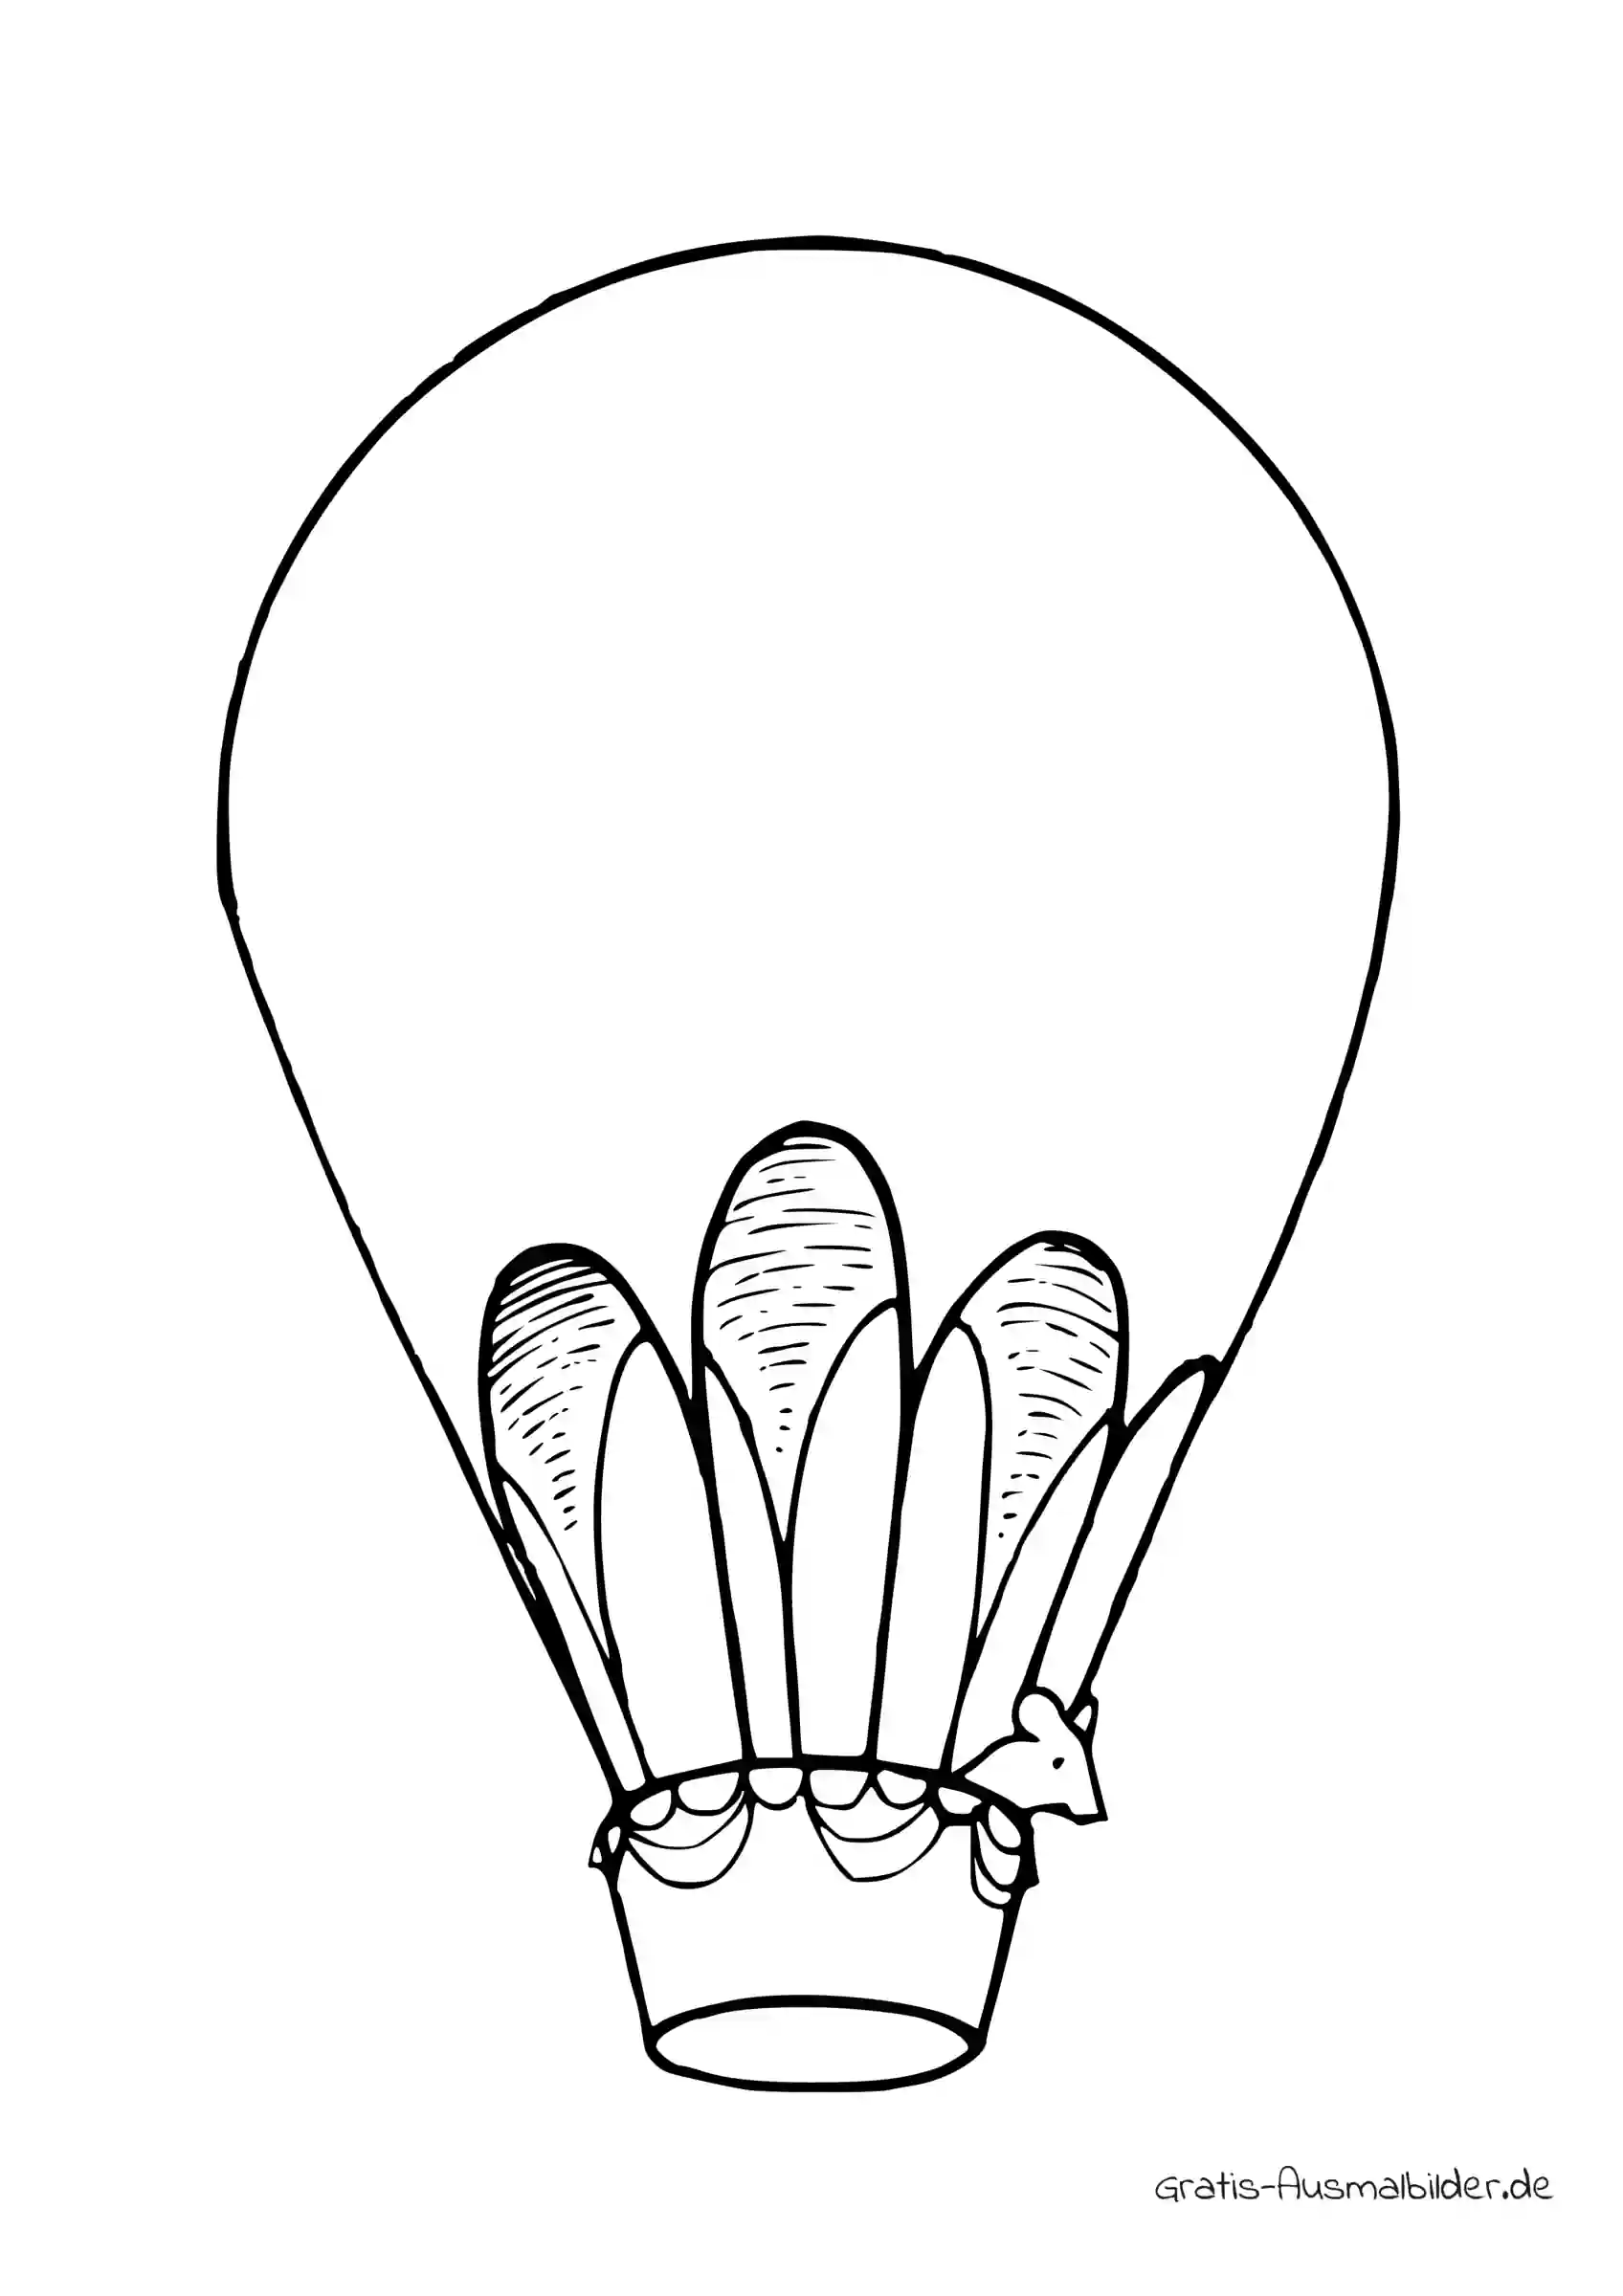 Ausmalbild Heißluftballon mit einer Maus